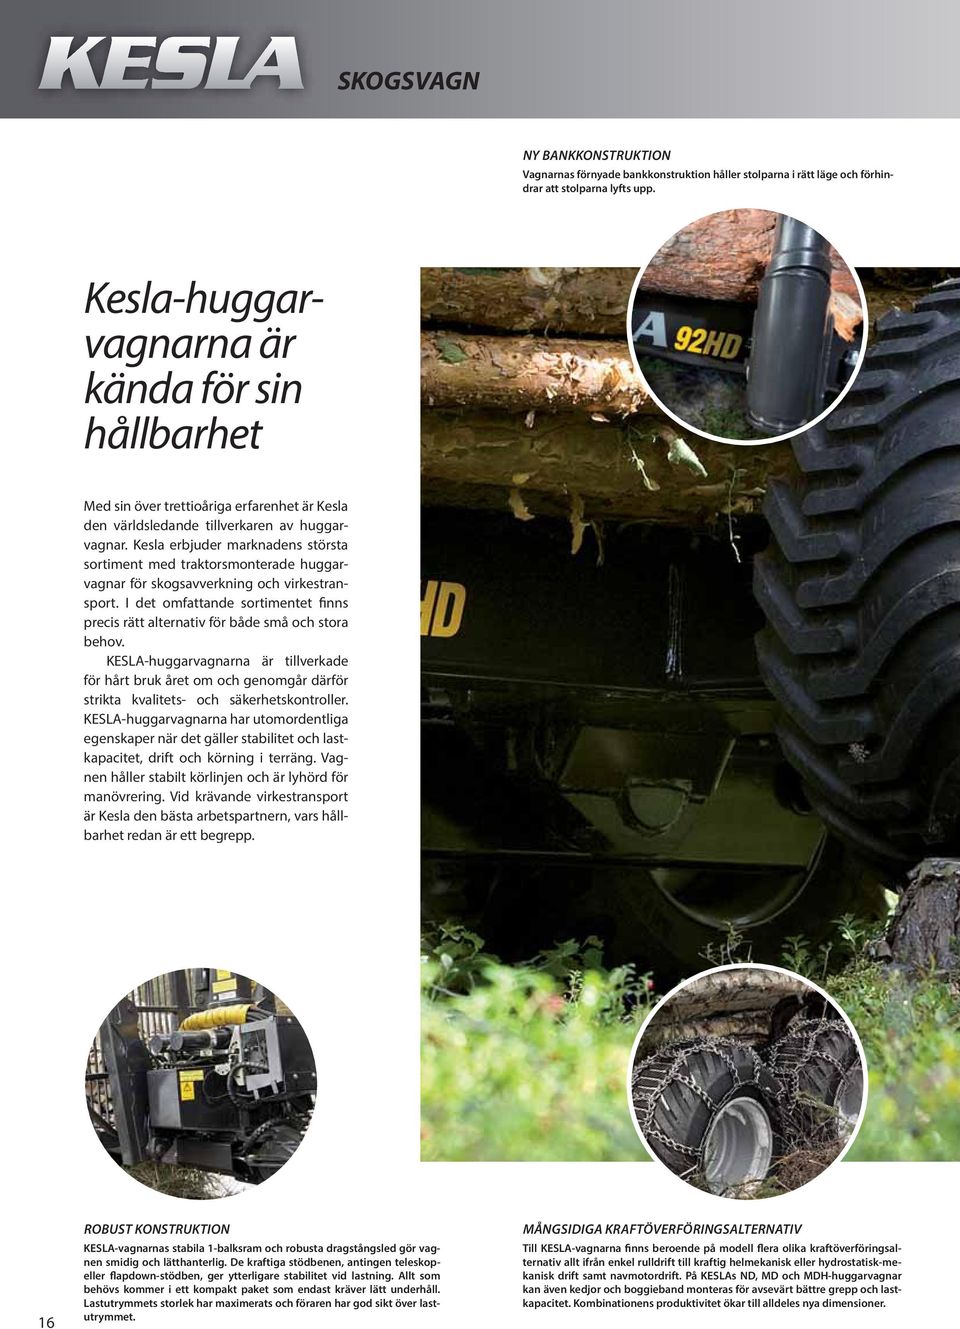 Kesla erbjuder marknadens största sortiment med traktorsmonterade huggarvagnar för skogsavverkning och virkestransport.